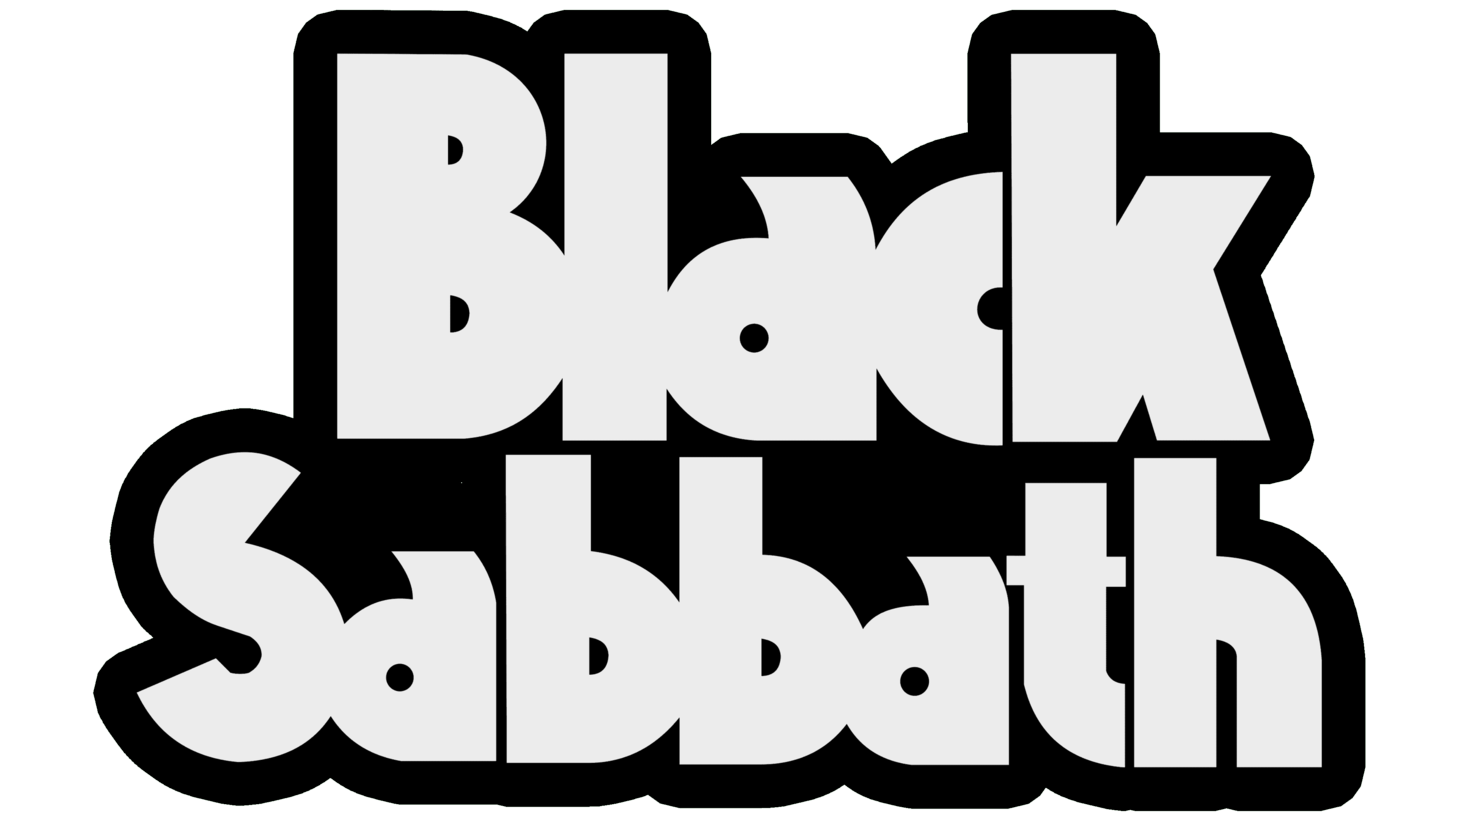 Black sabbath sign 1972